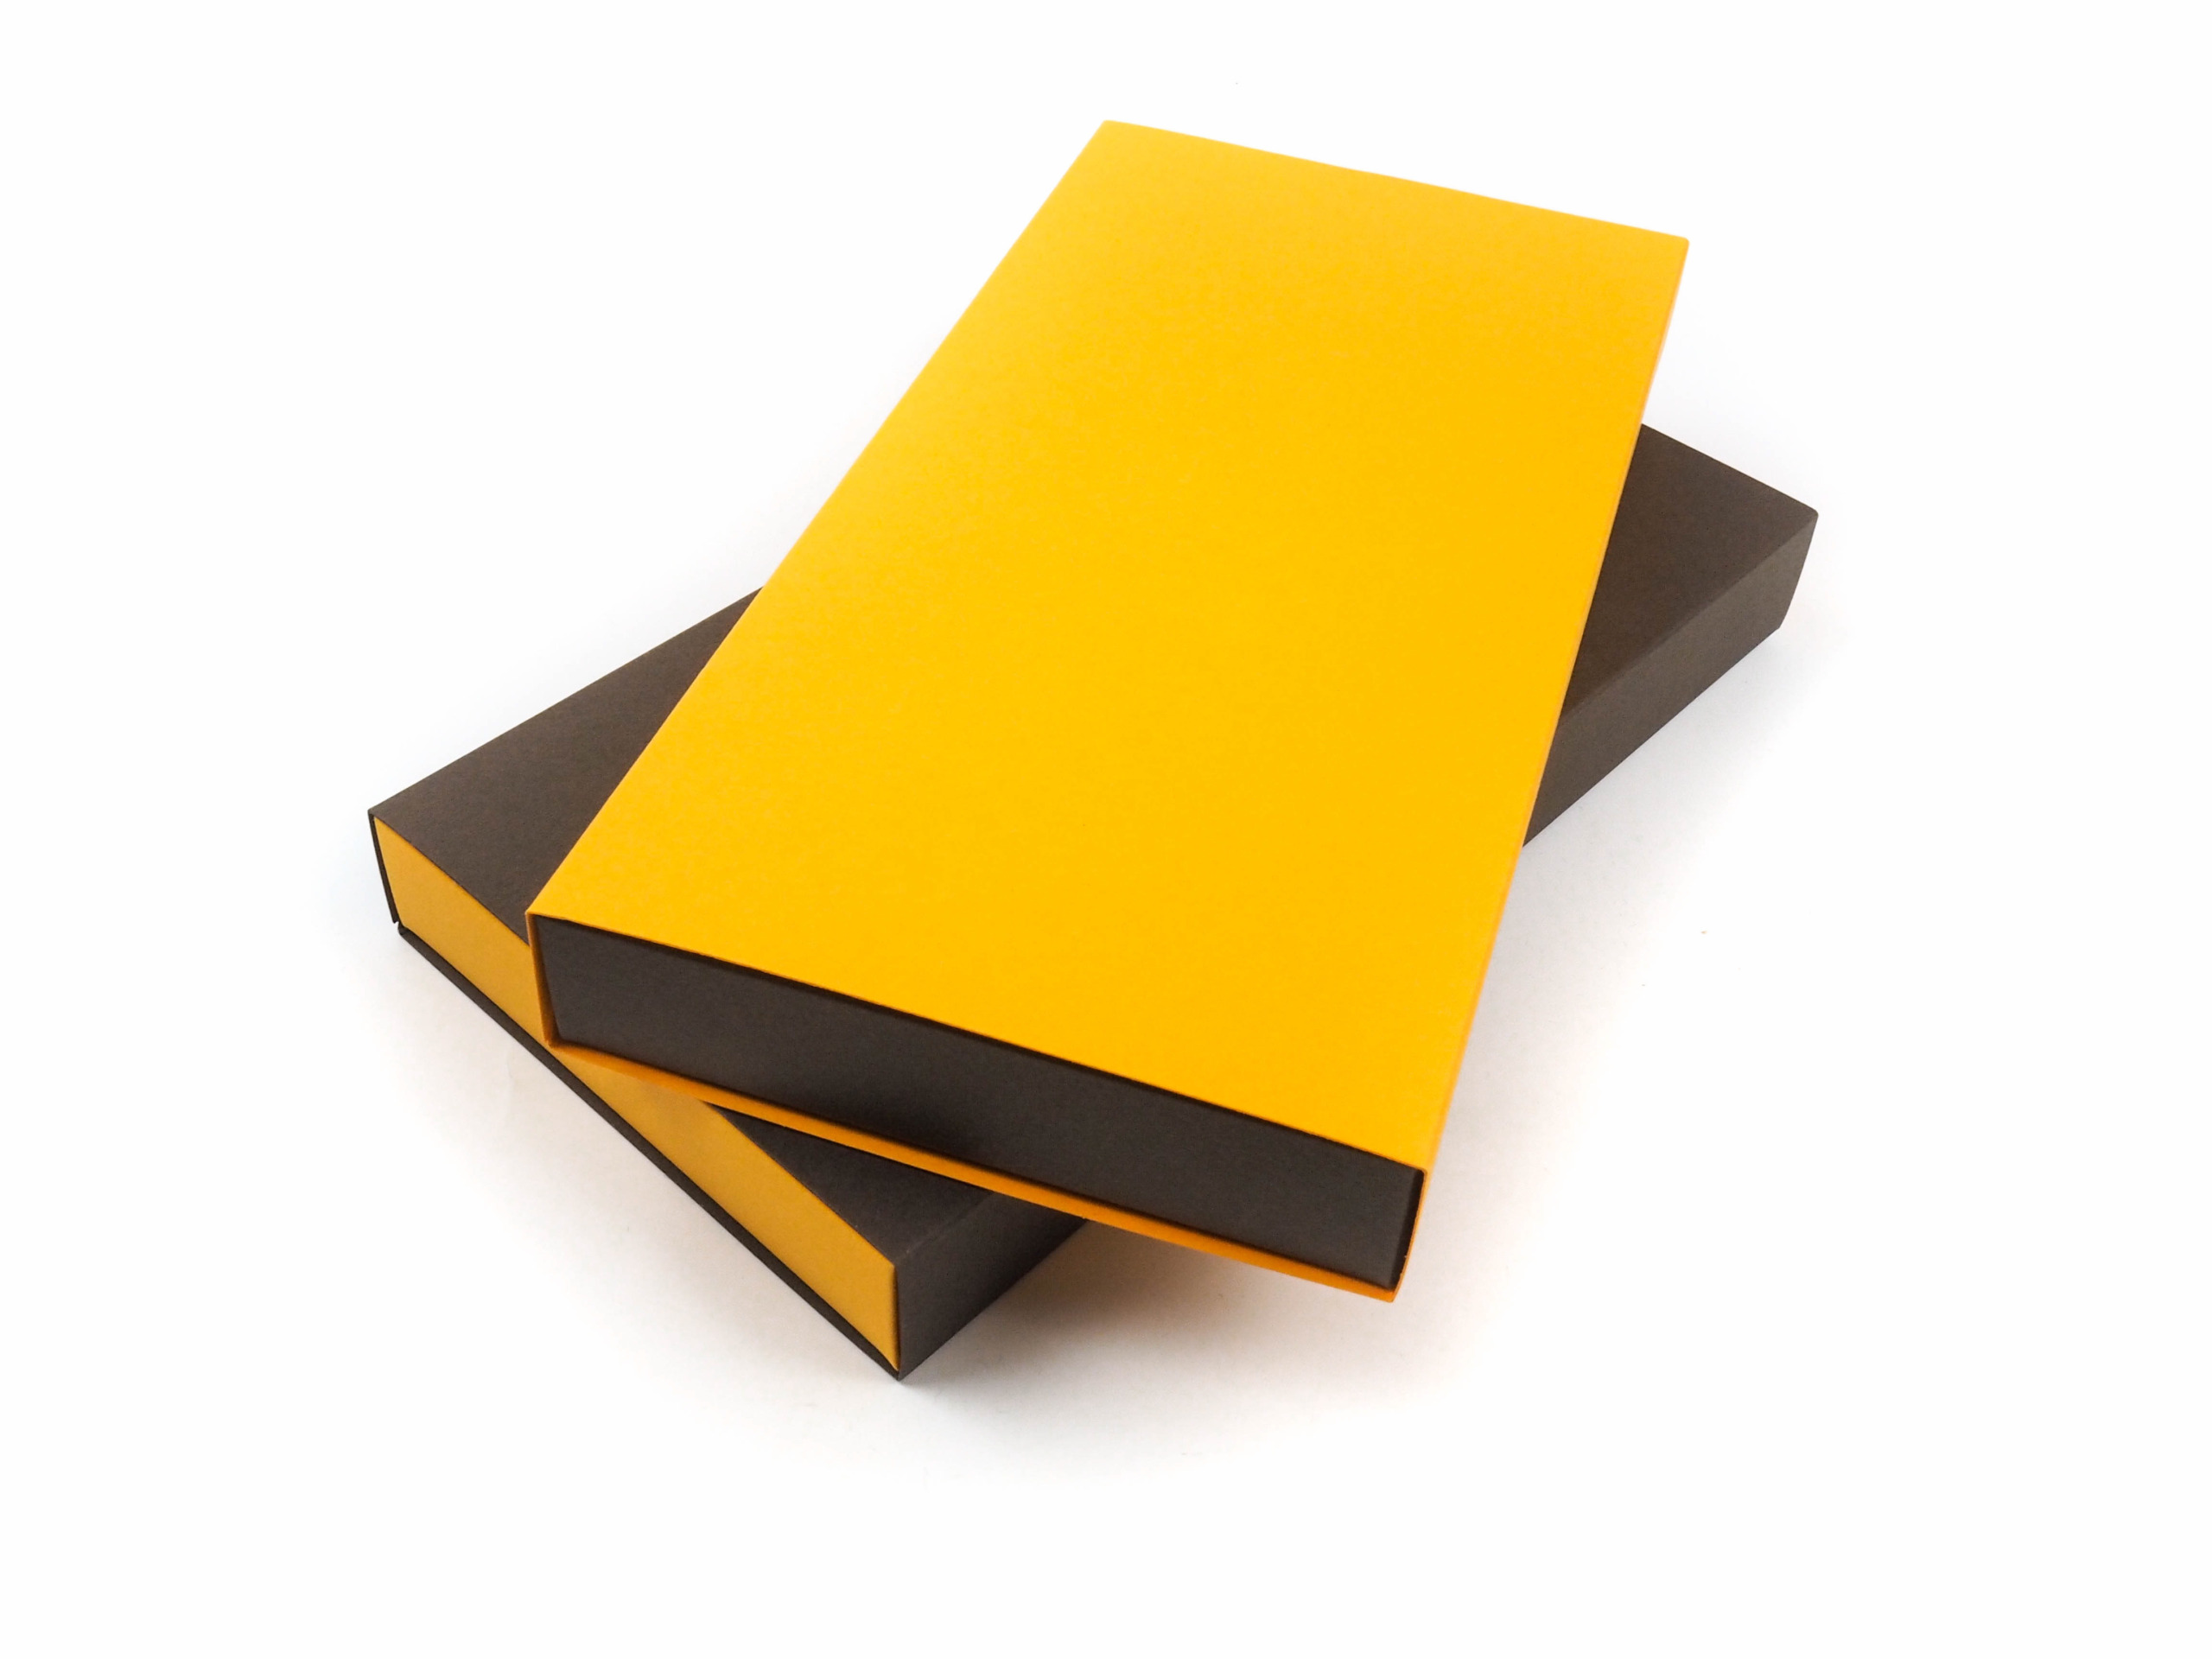 Dárková krabička byla vyrobena s požadavkem na vysouvání z boku a ve dvou barevném provedení.